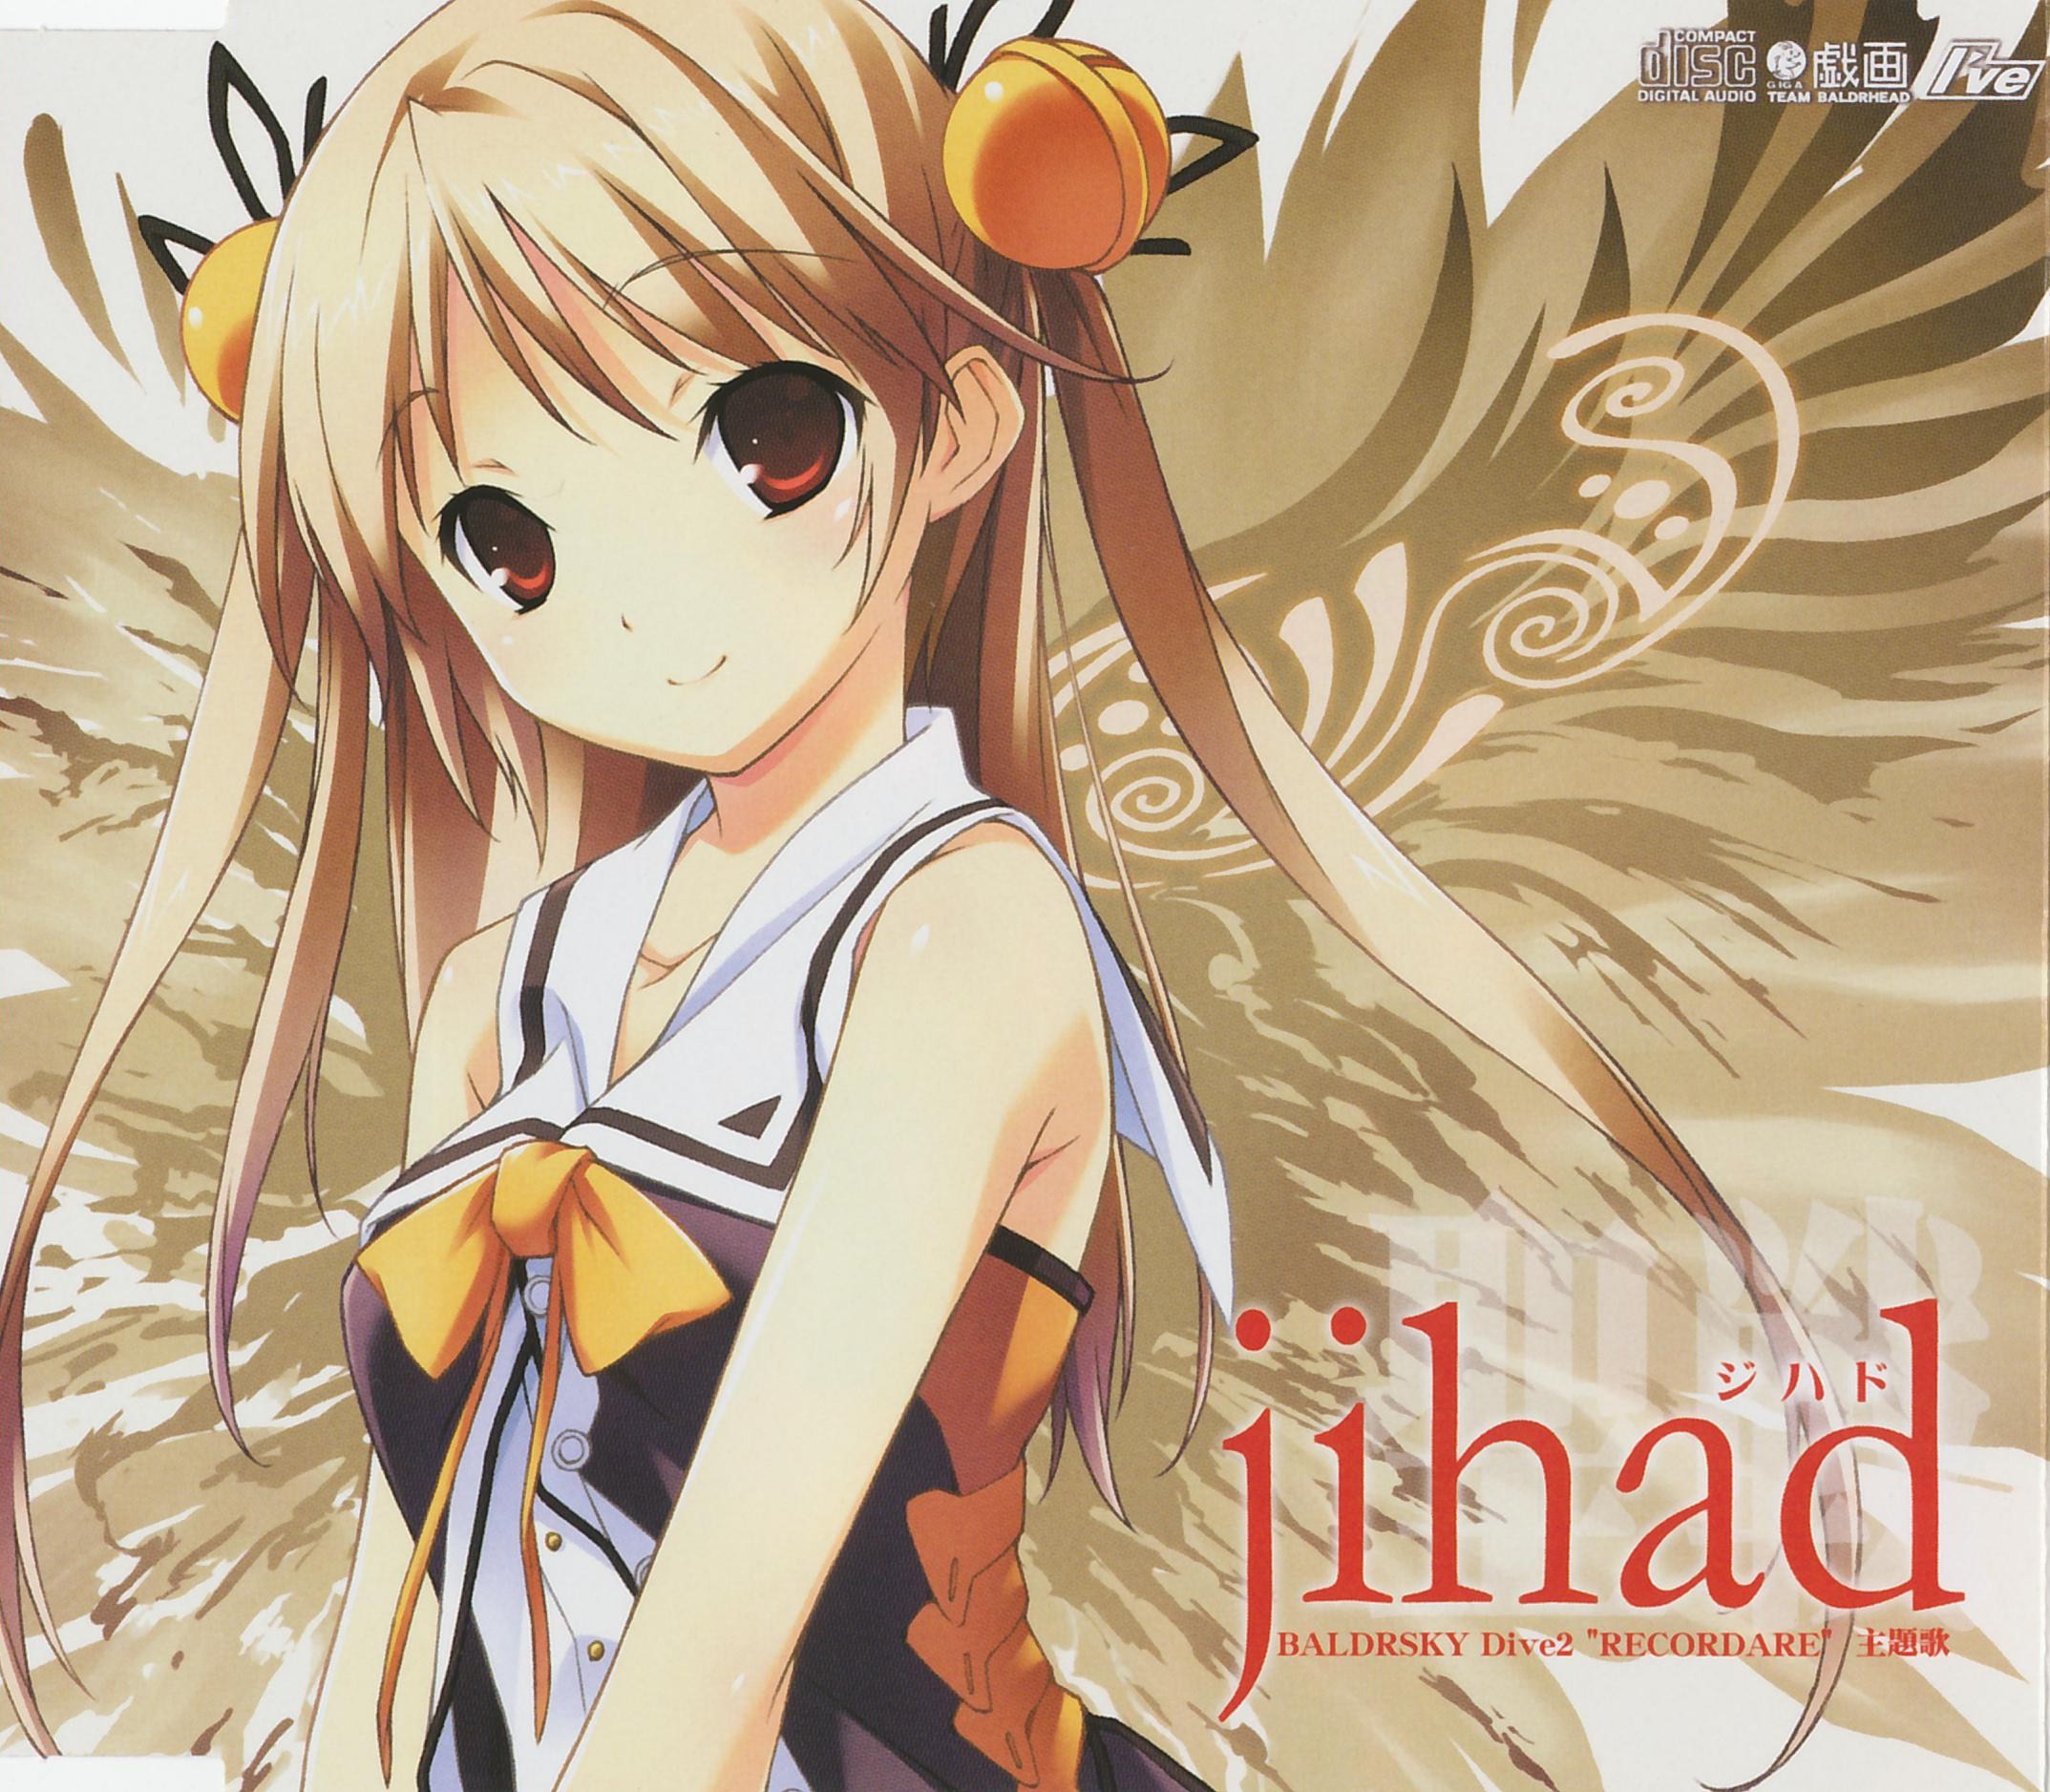 KOTOKO — jihad cover artwork